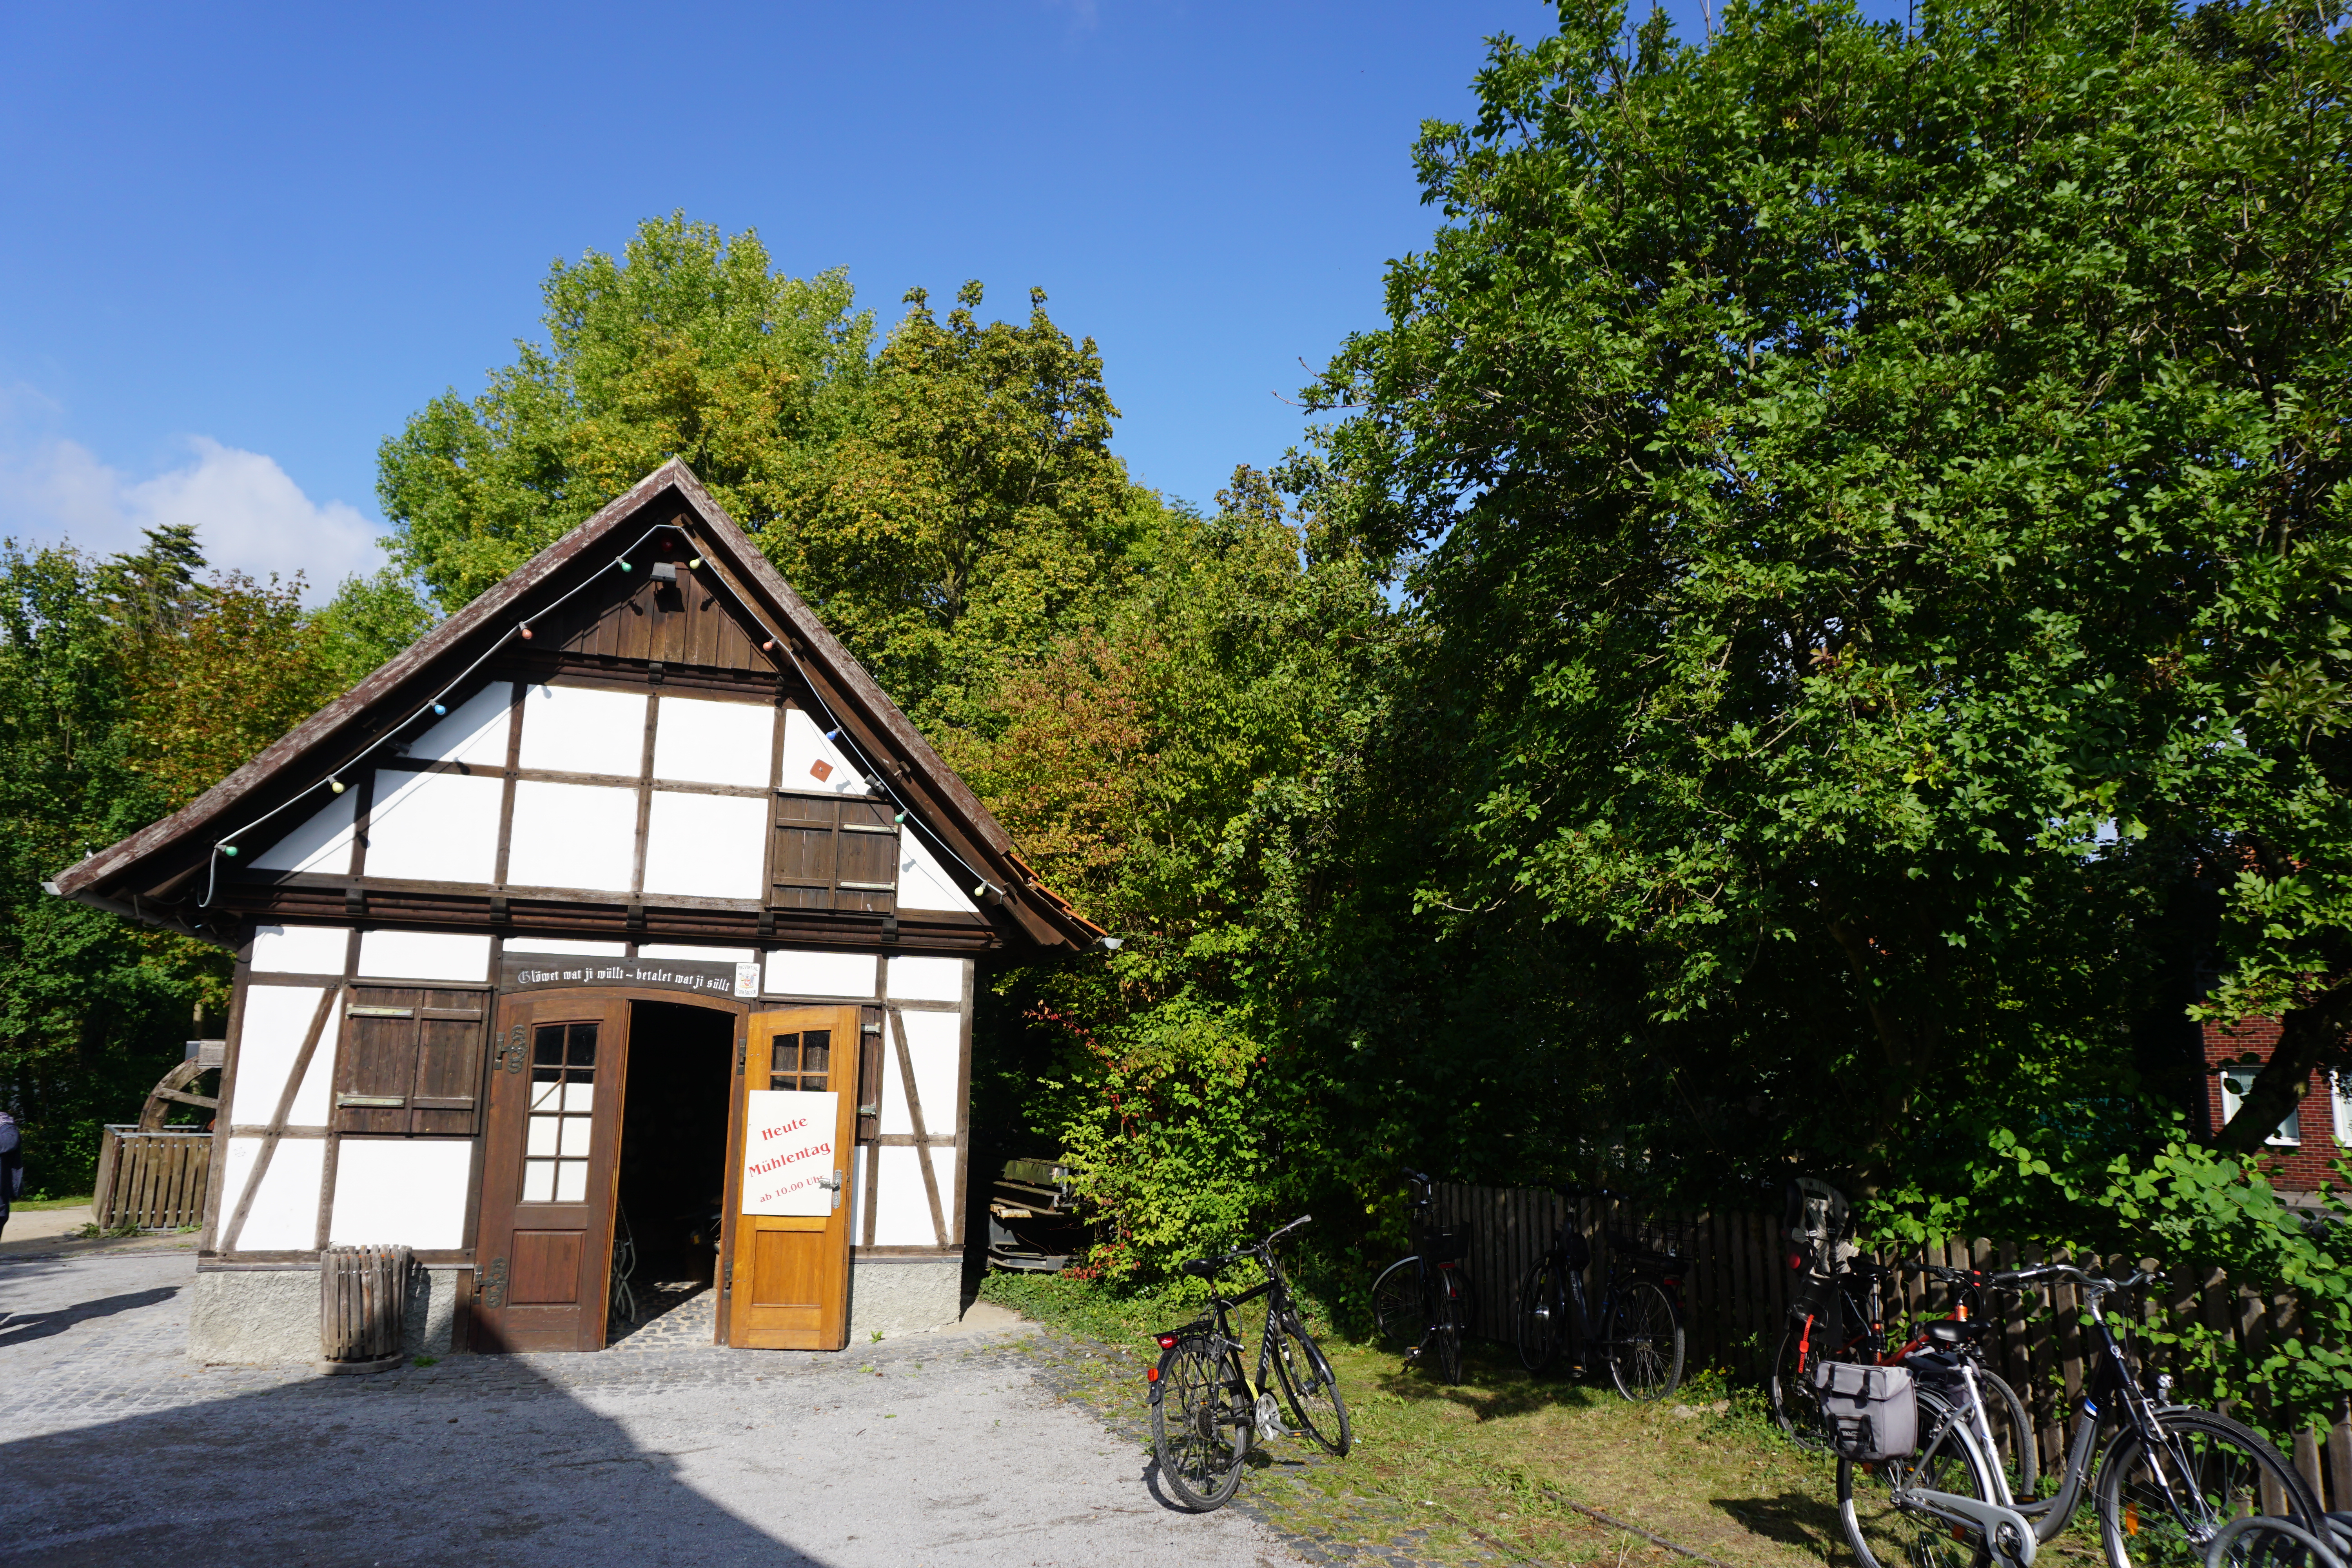 Nebengebäude der historischen Ölmühle, Salzkotten.
